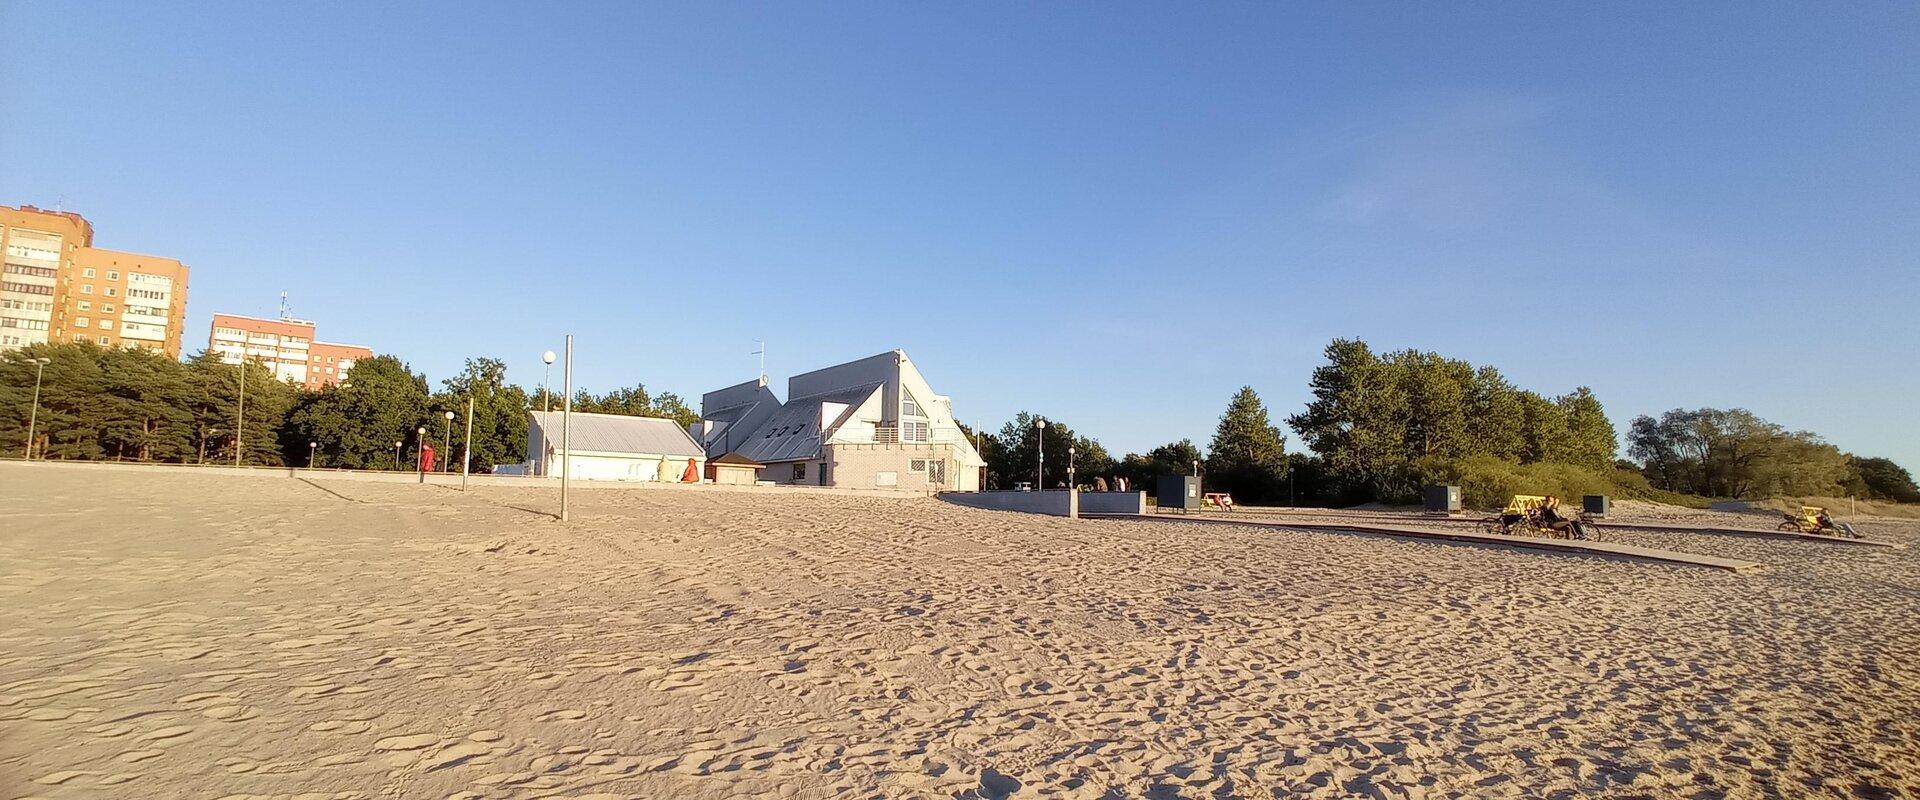 Der Strand Stroomi ist ein familienfreundlicher sandiger Badestrand im nördlichen Teil von Tallinn. Den Kindern stehen mehrere Spielplätze zur Verfügu